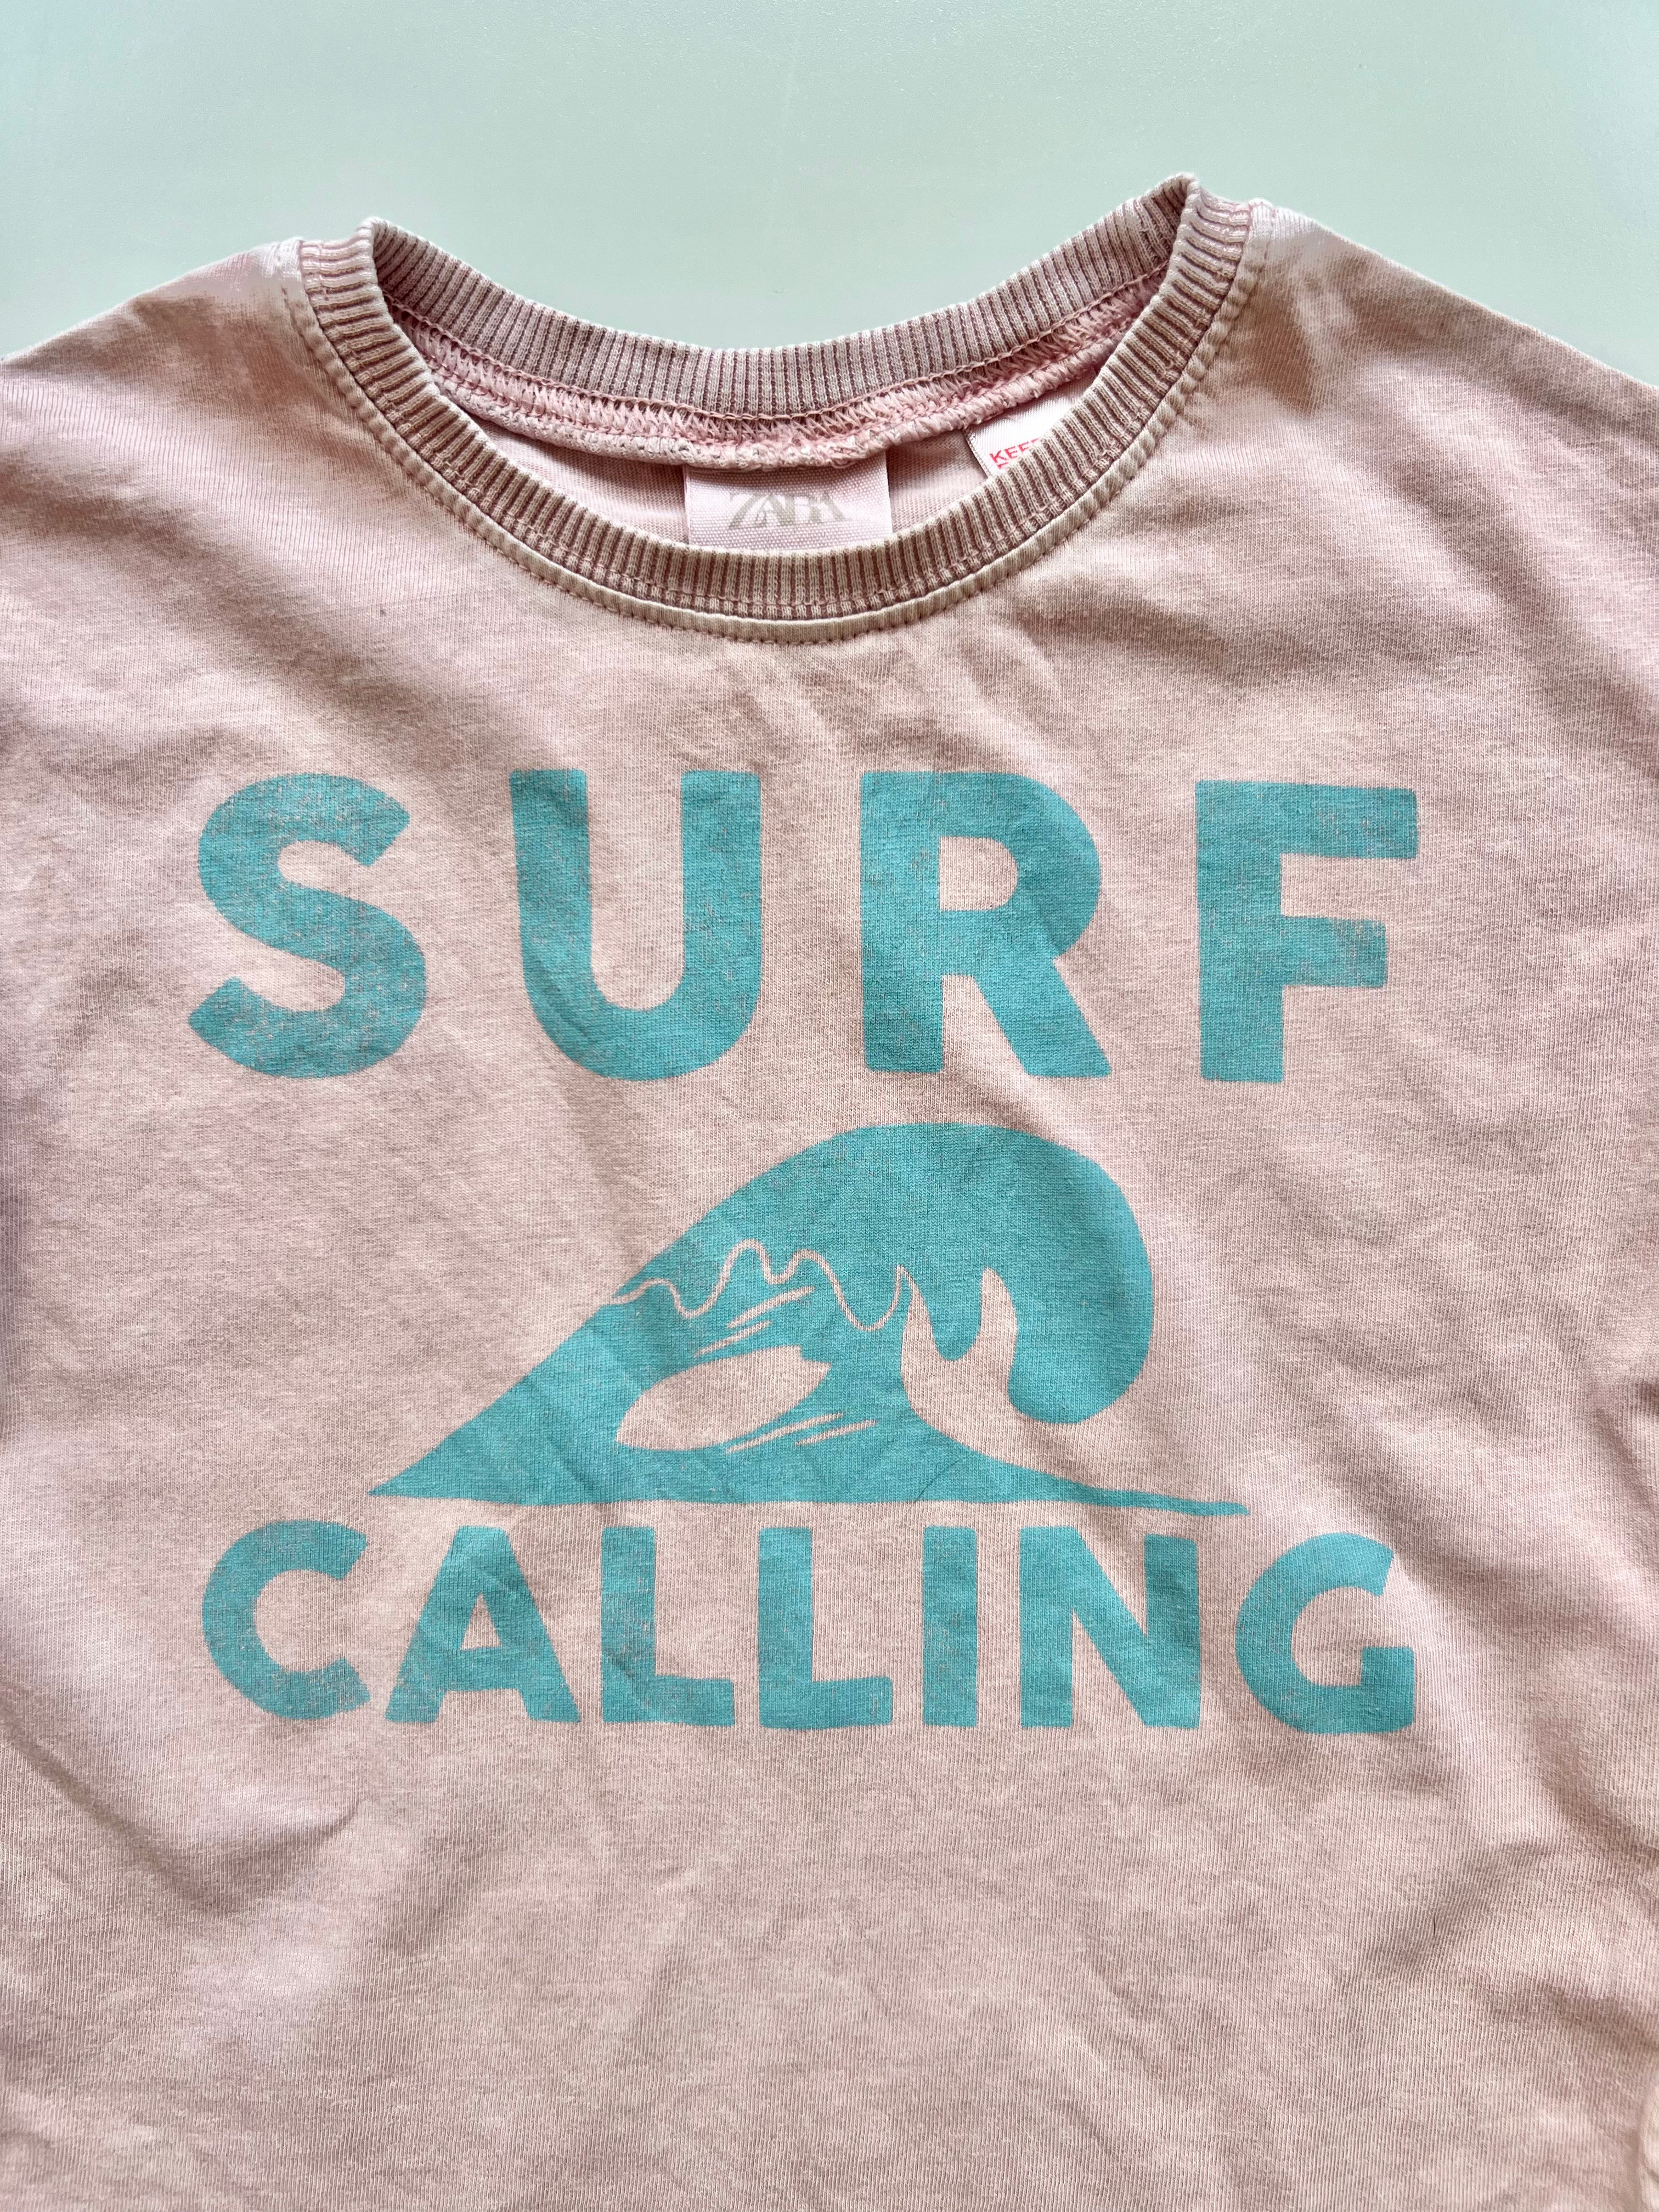 Zara Surf Calling Tee Shirt 12-18 Months